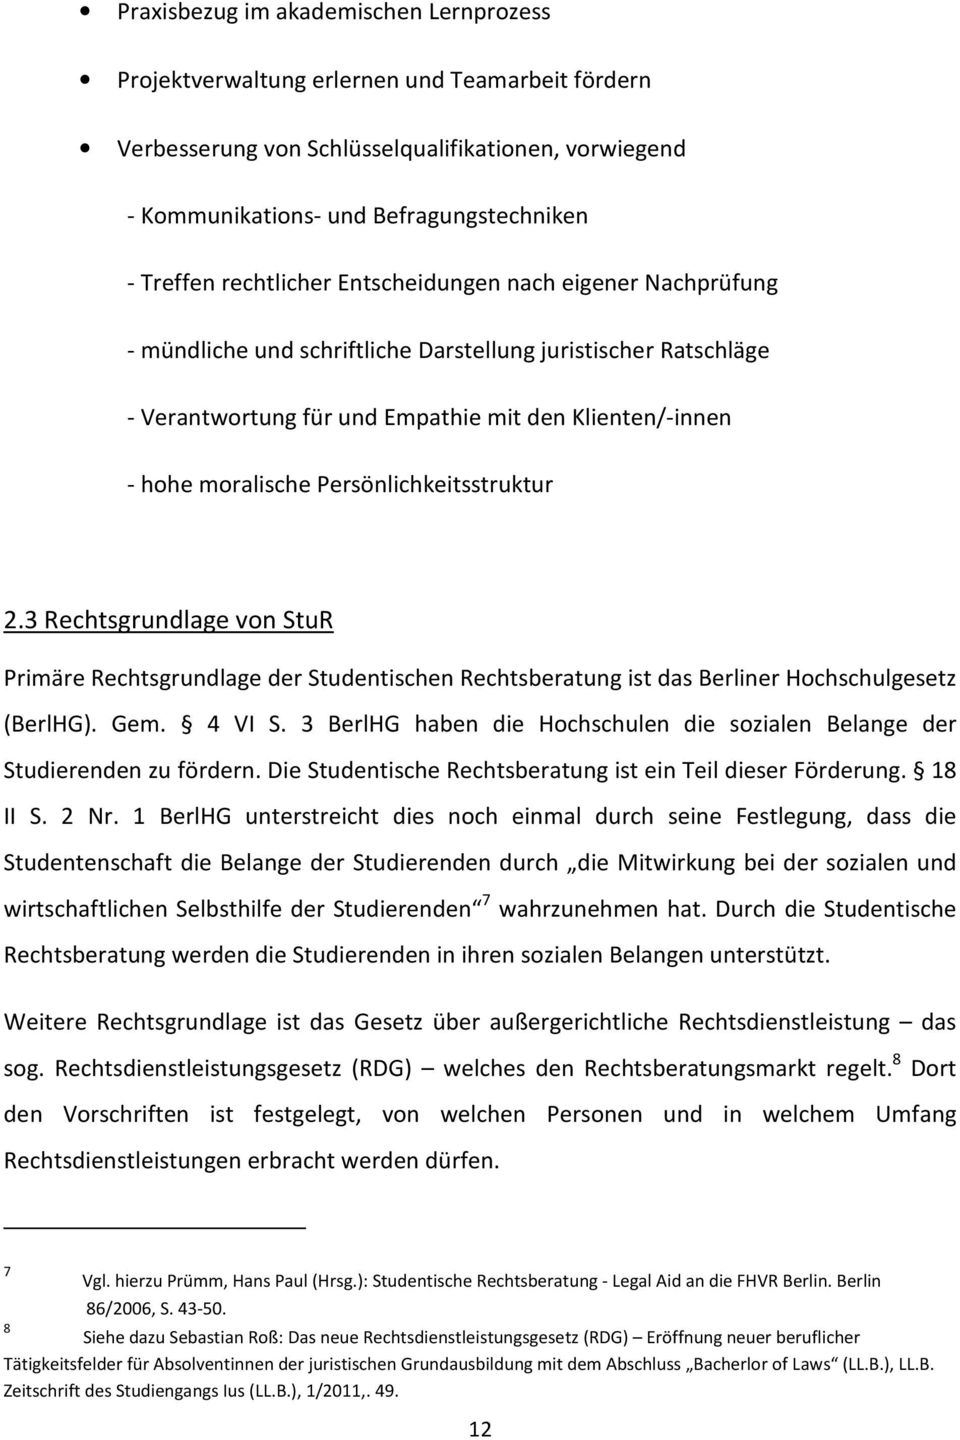 Persönlichkeitsstruktur 2.3 Rechtsgrundlage von StuR Primäre Rechtsgrundlage der Studentischen Rechtsberatung ist das Berliner Hochschulgesetz (BerlHG). Gem. 4 VI S.